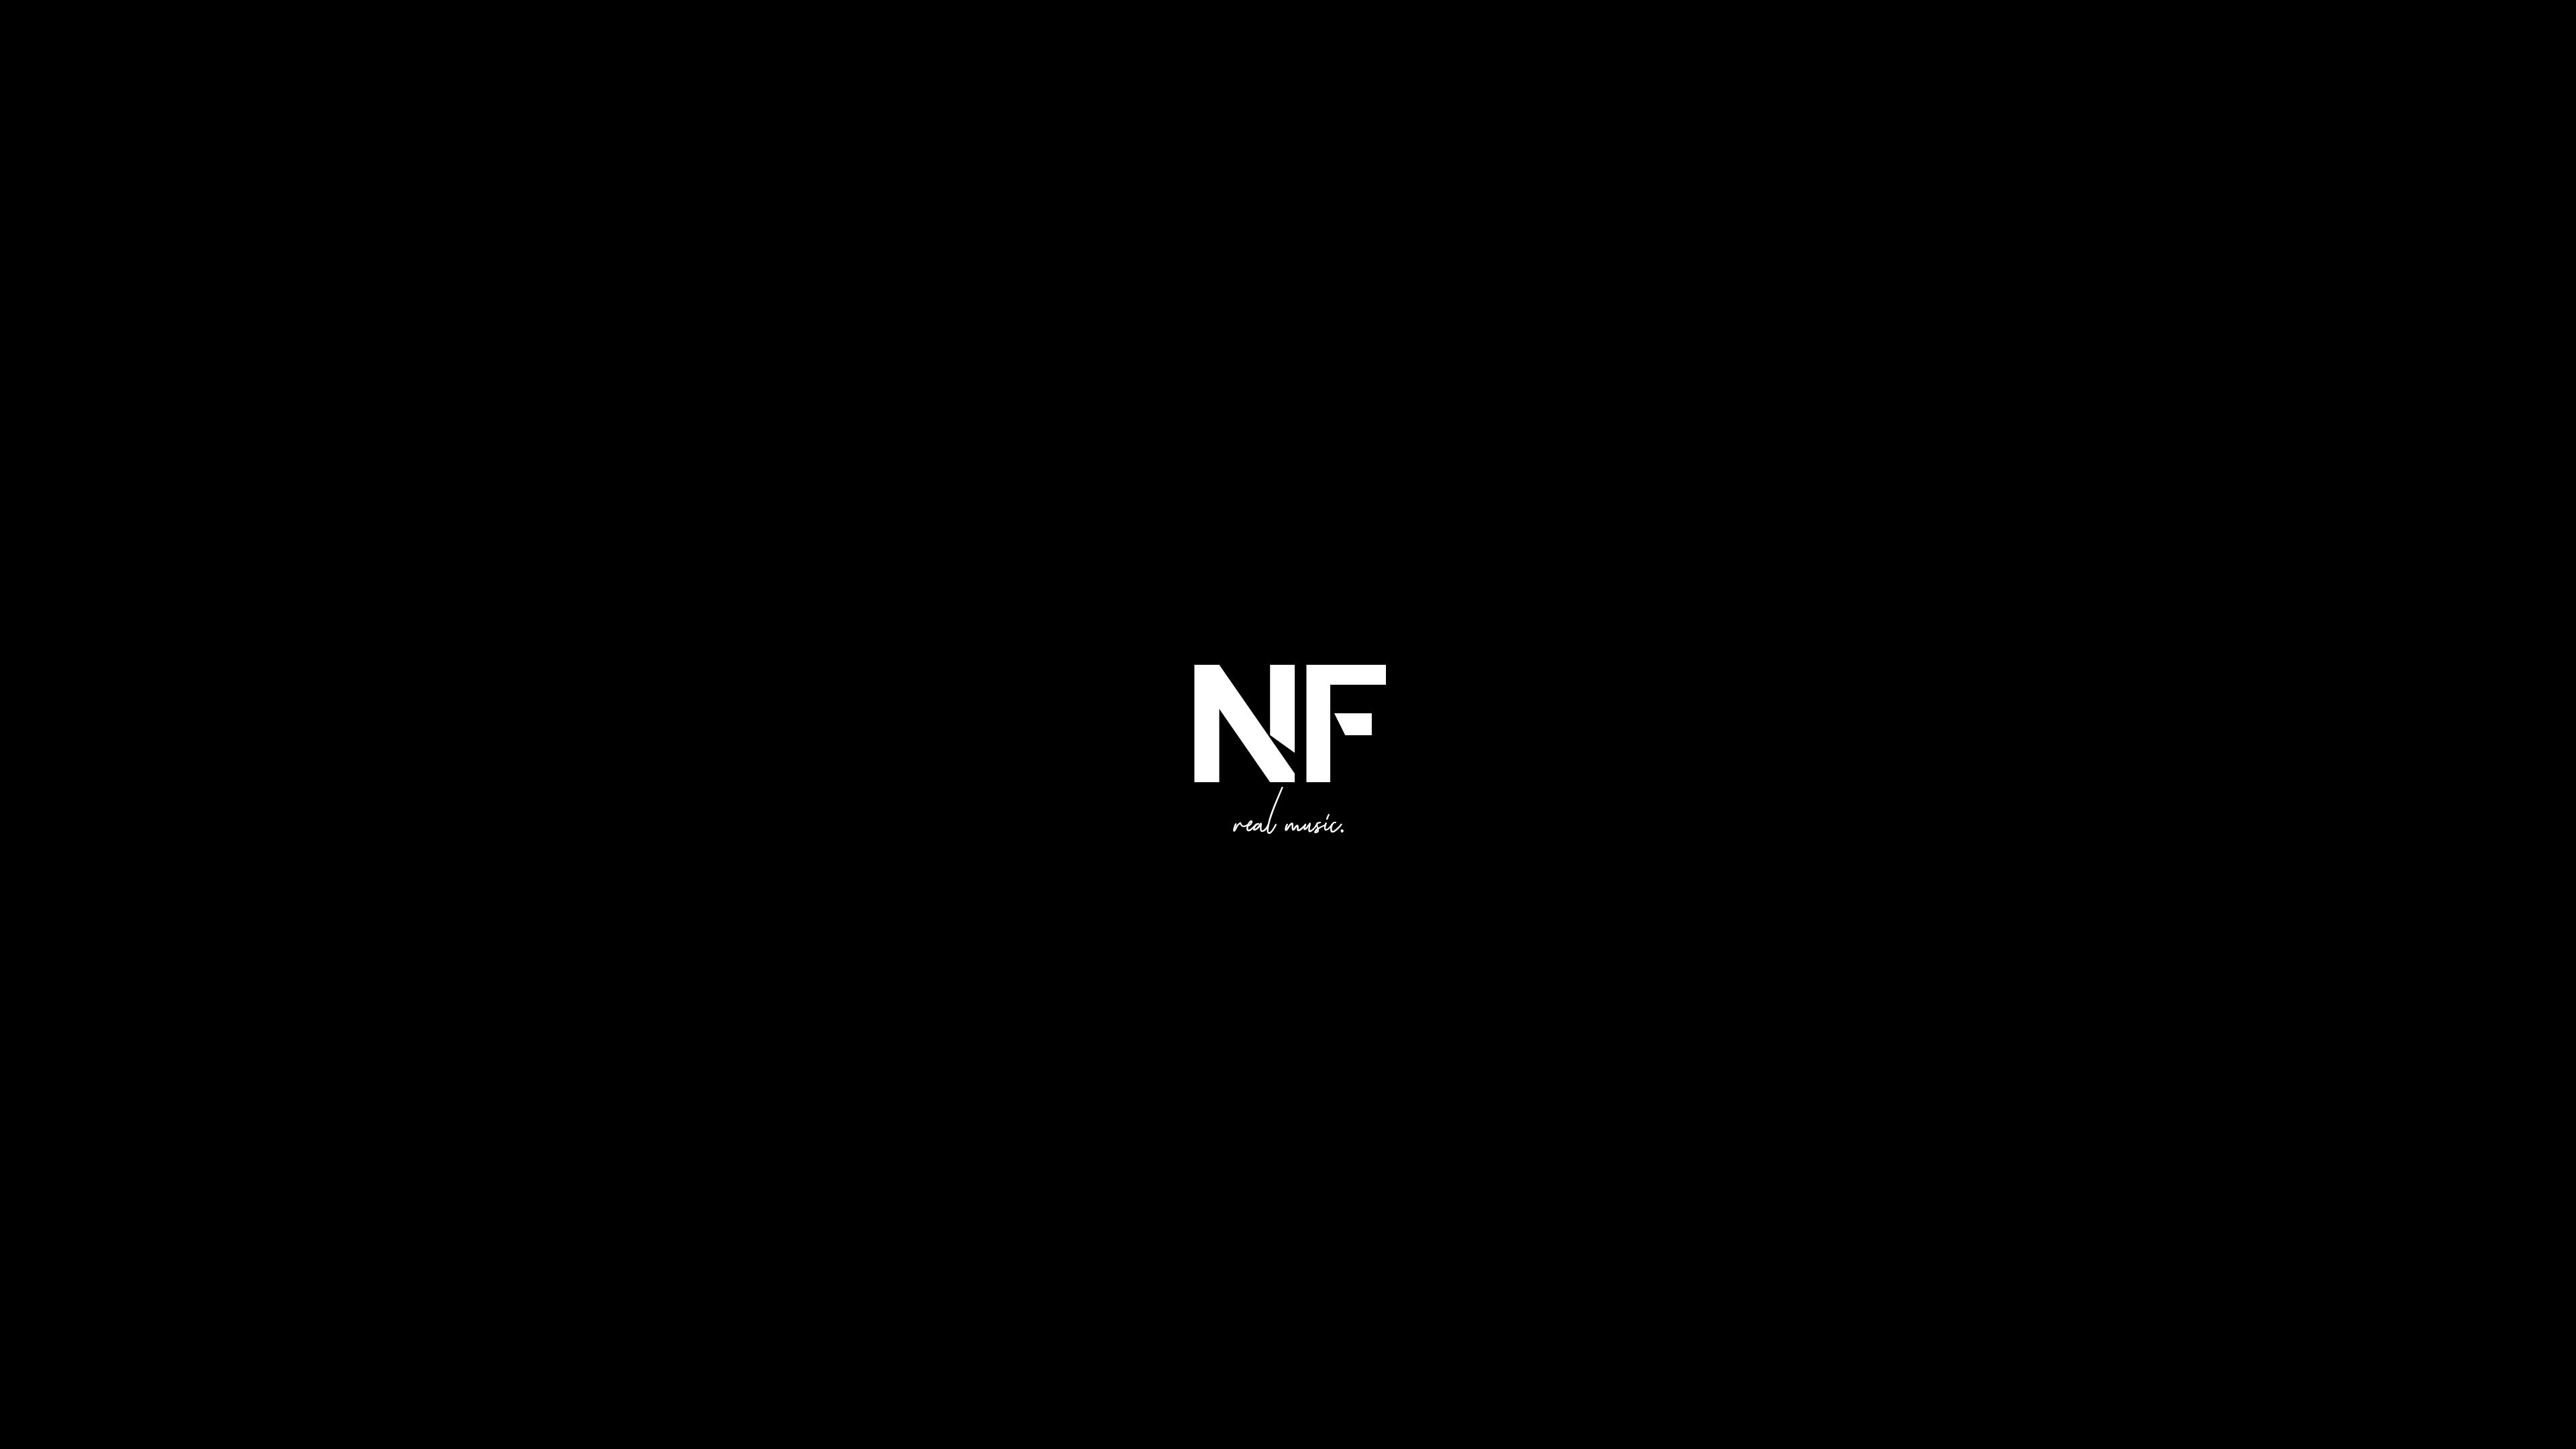 NF Rapper Wallpapers HD  PixelsTalkNet